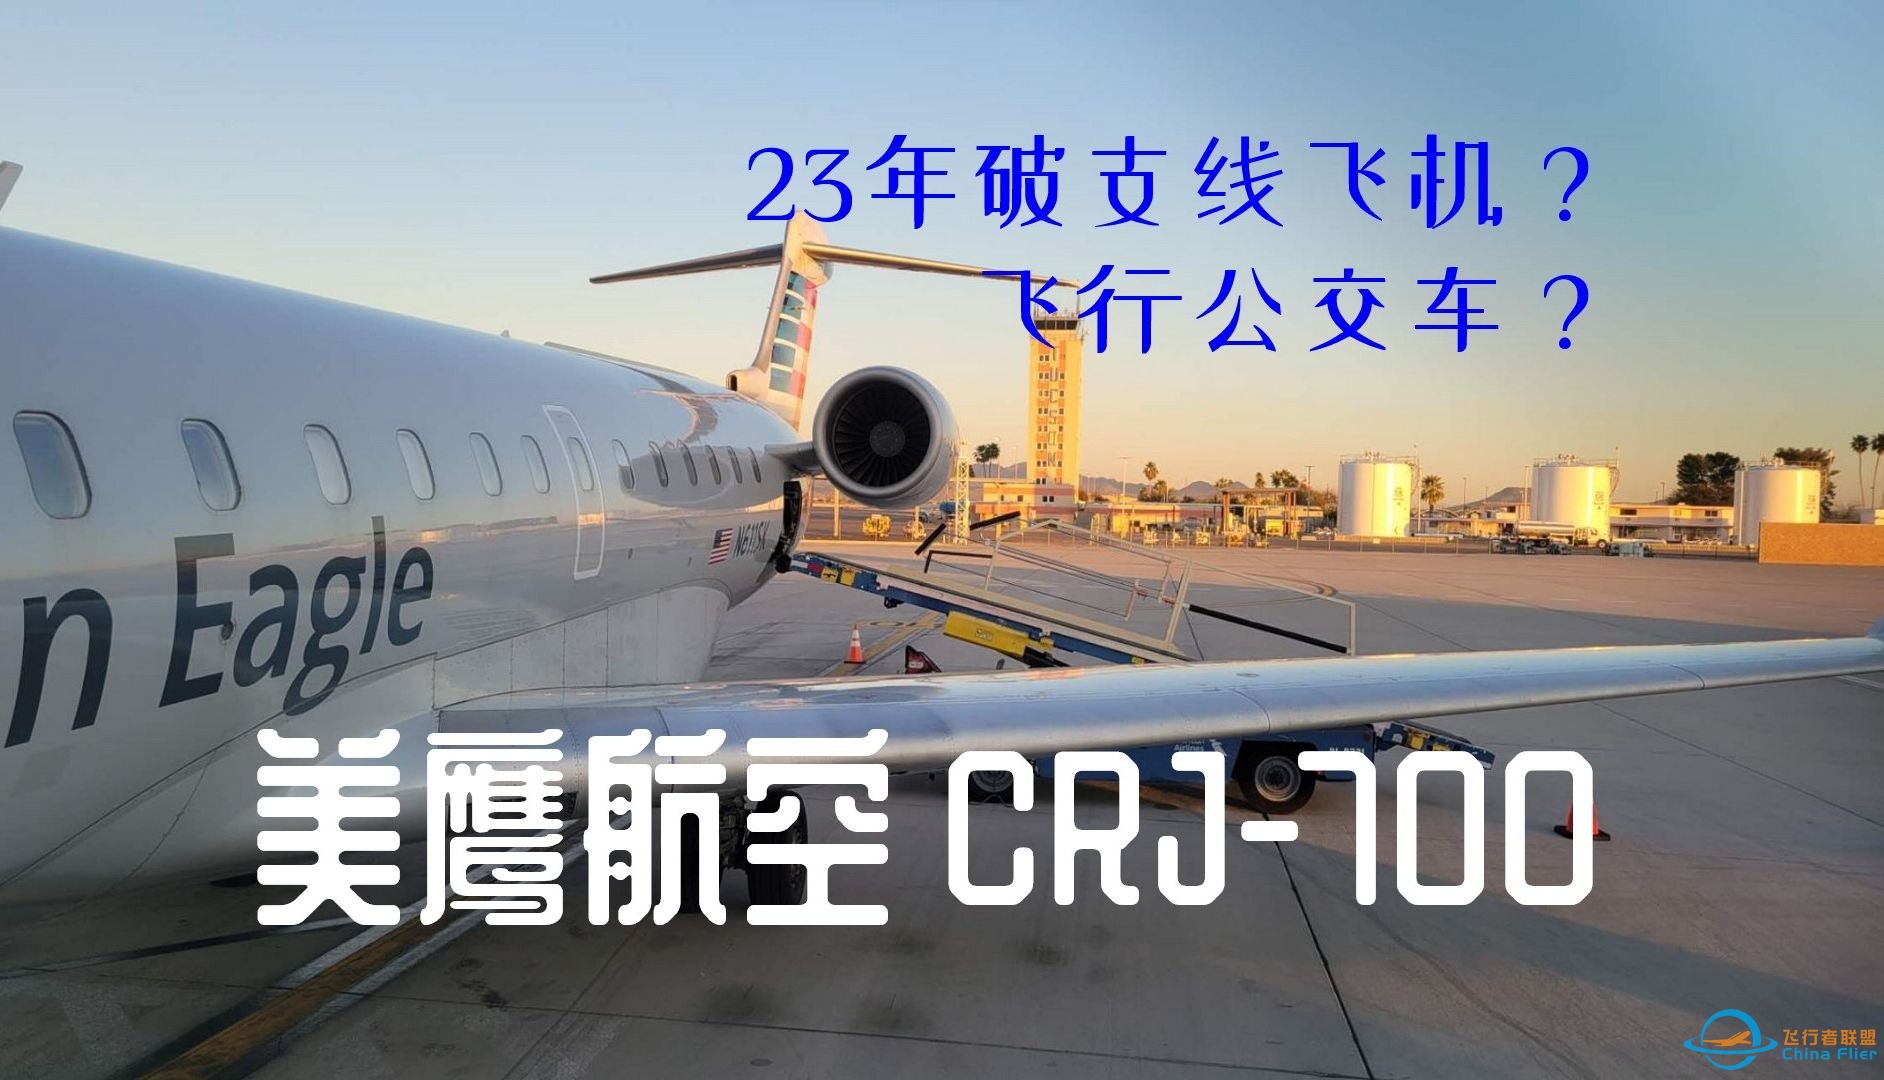 【飞行游记】长途大巴飞上天？美鹰航空CRJ-700区域航线飞行体验-7993 